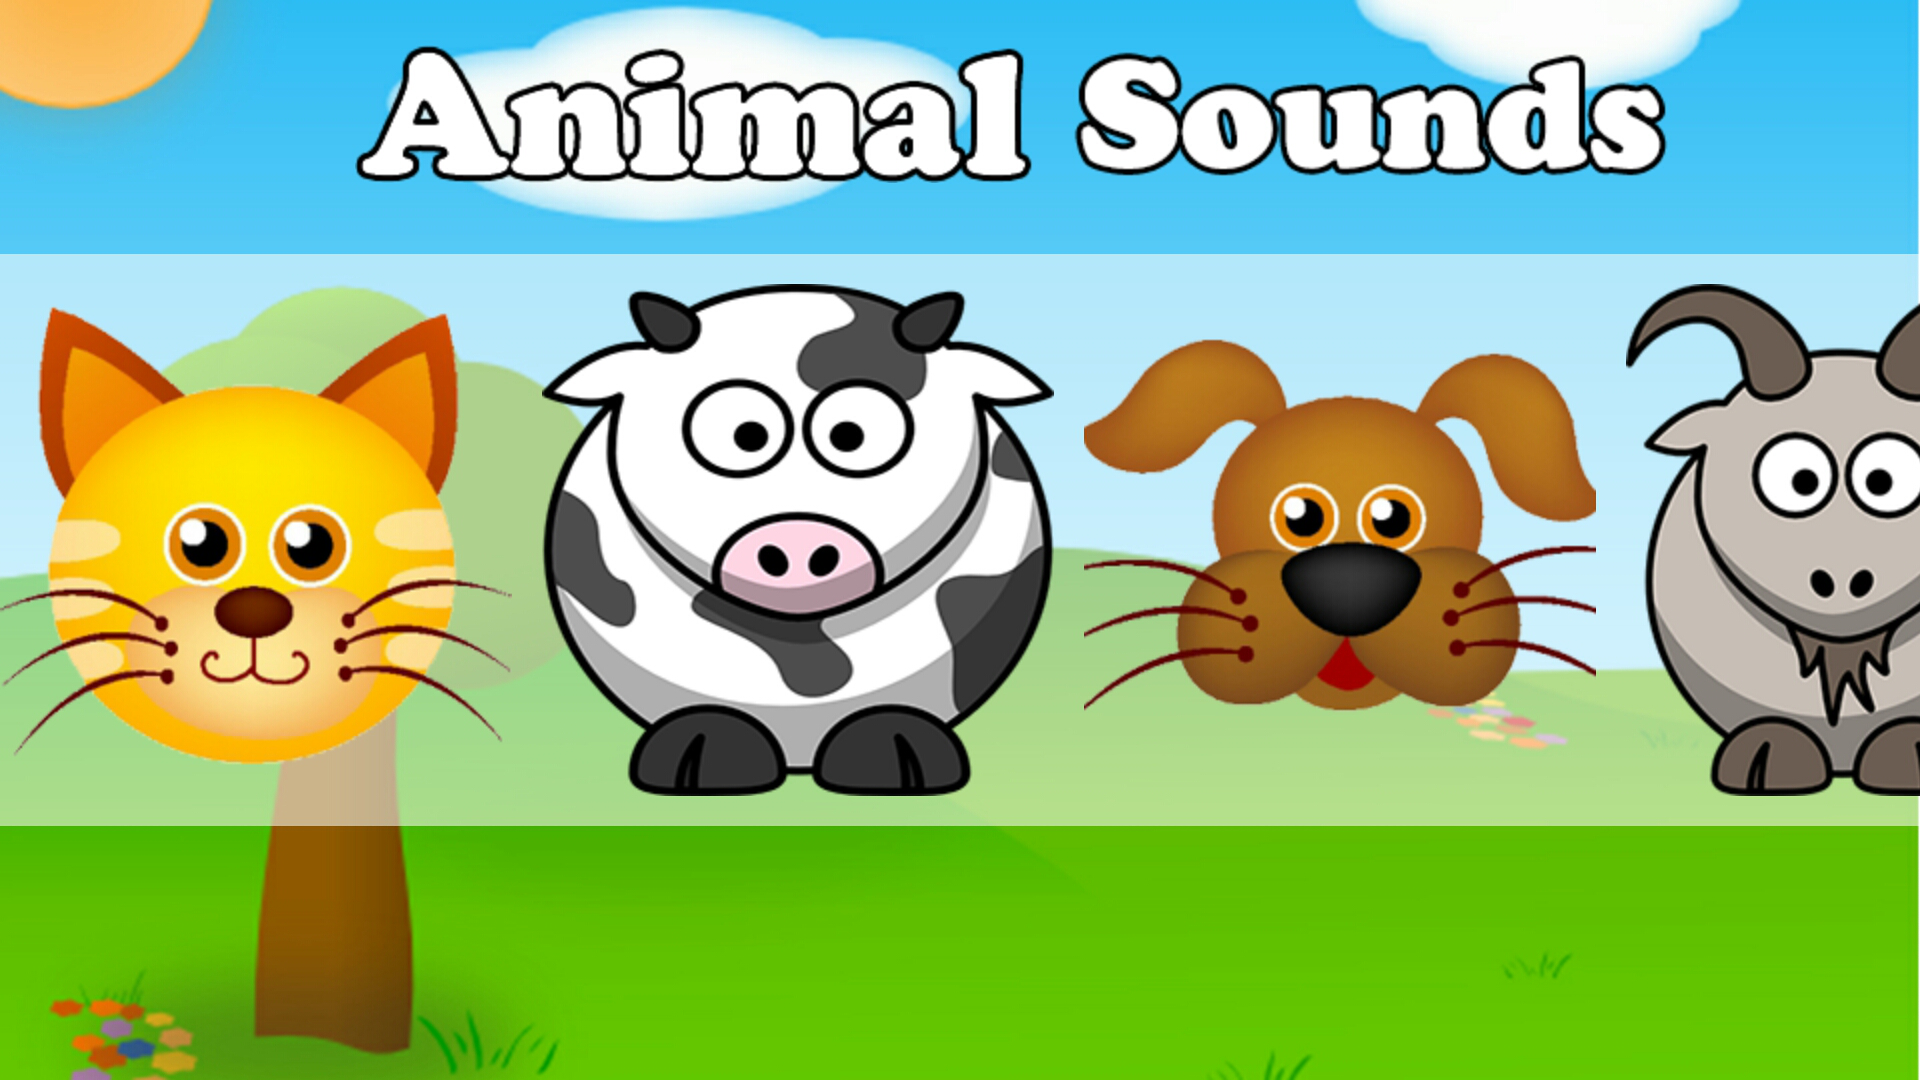 ANIMAL SOUNDS